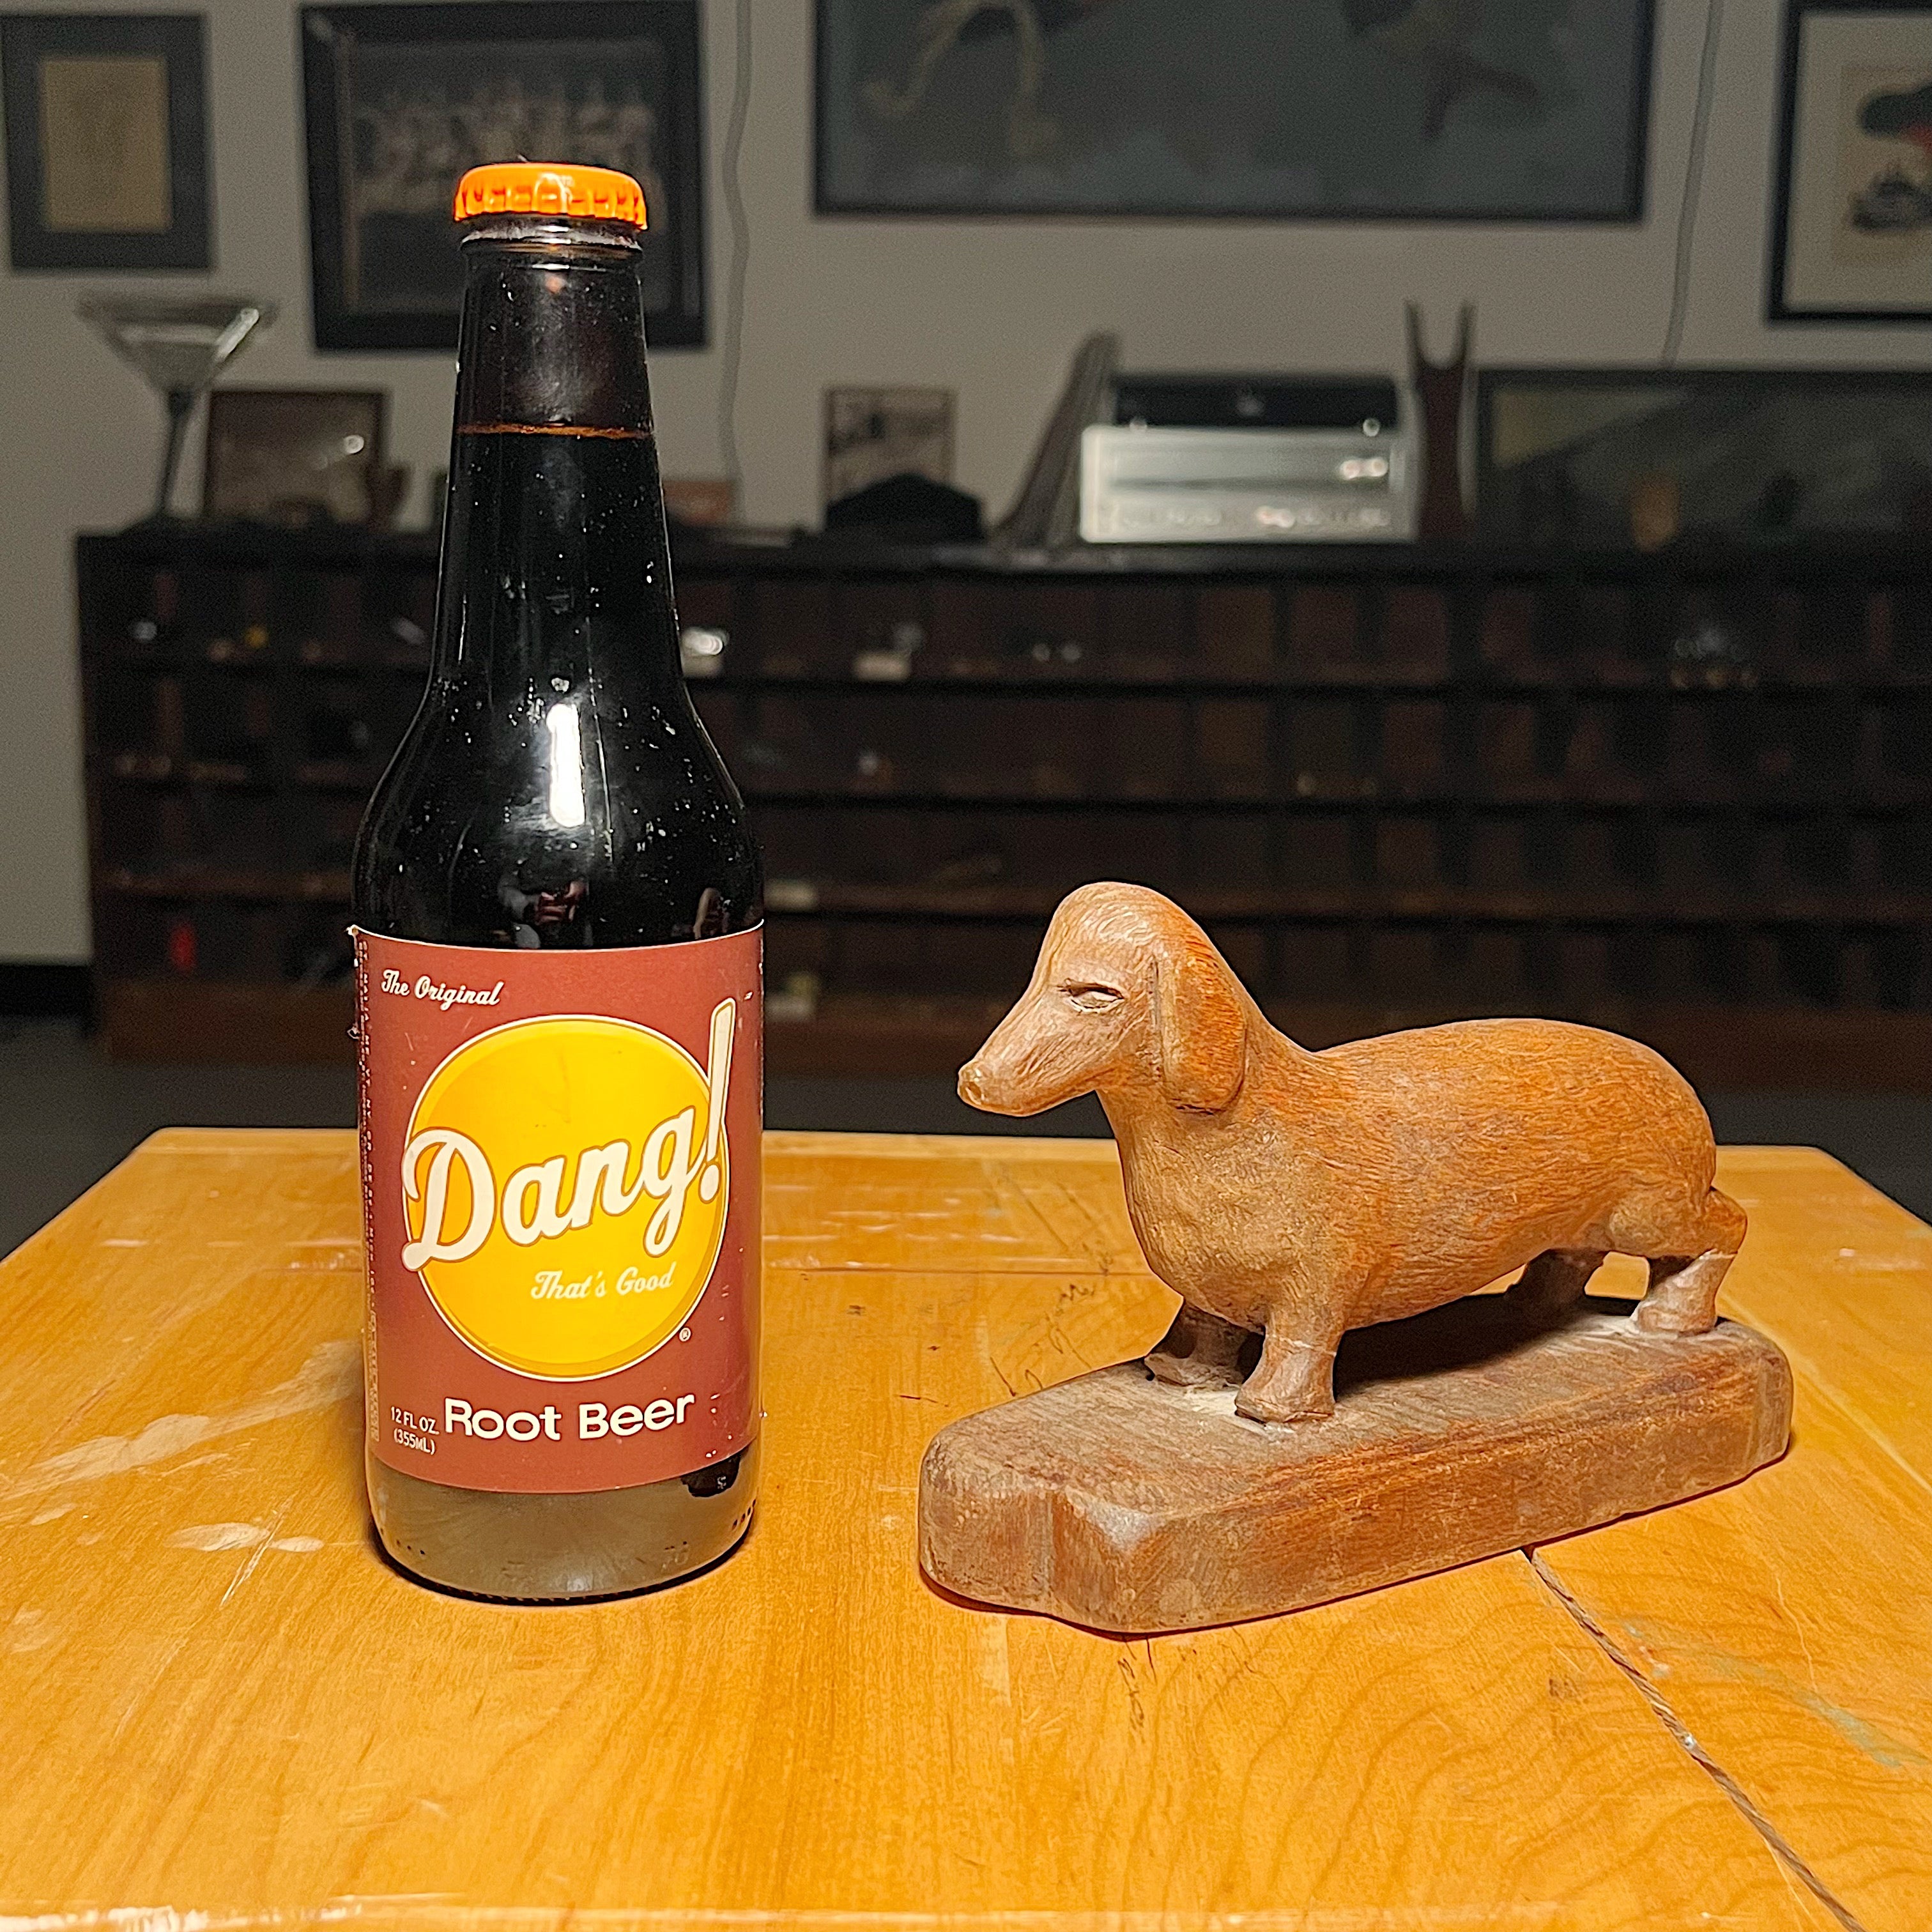 Tony Wons Folk Art Sculpture of Dachshund Dog | Signed 1955